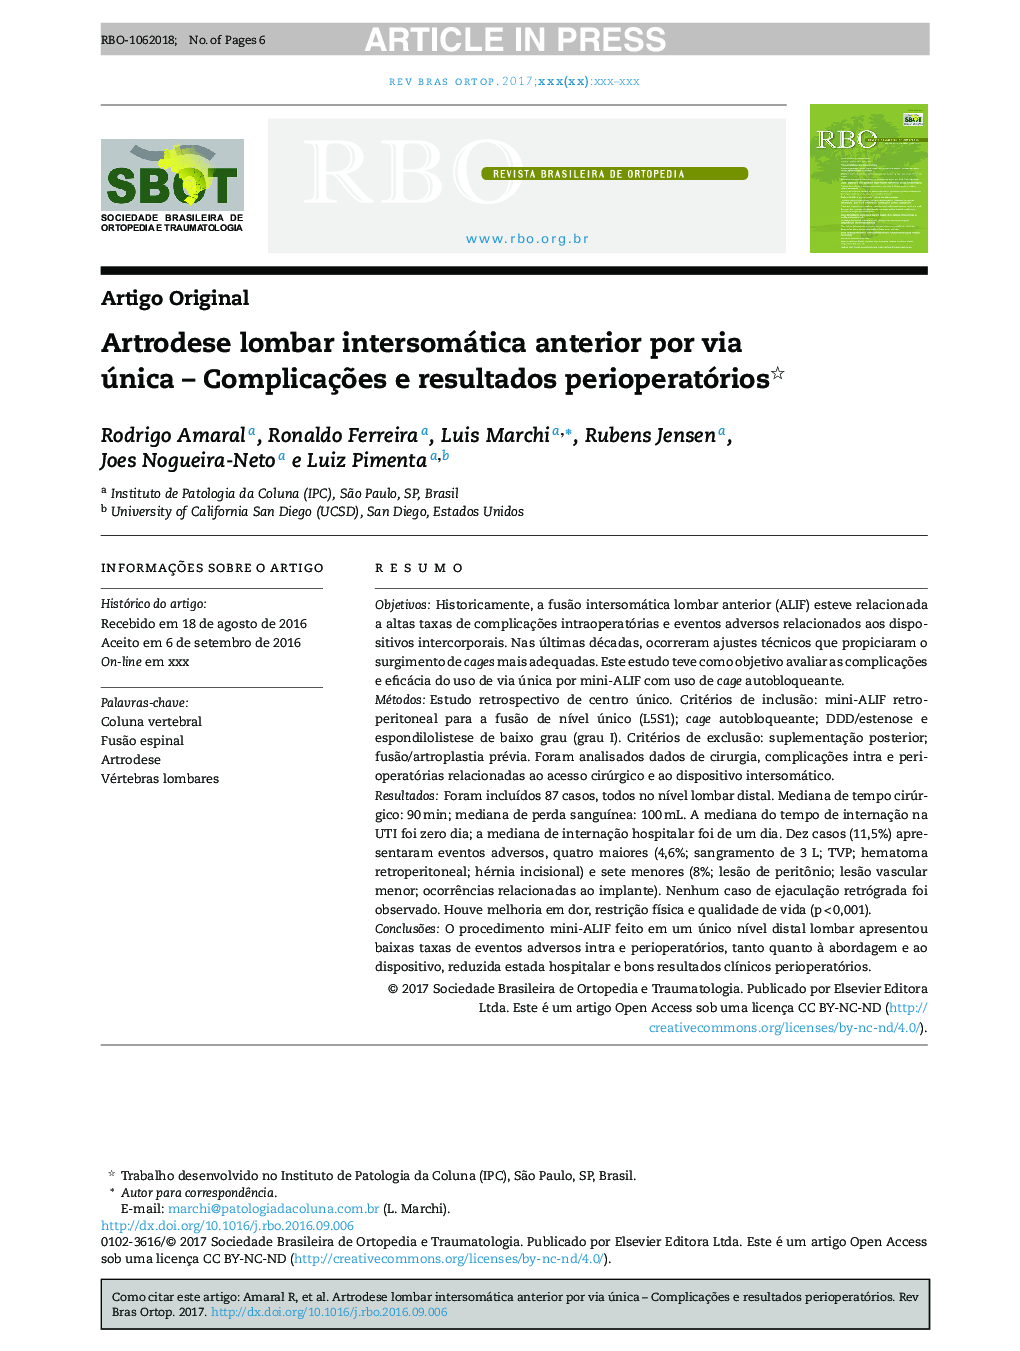 Artrodese lombar intersomática anterior por via única - ComplicaçÃµes e resultados perioperatórios